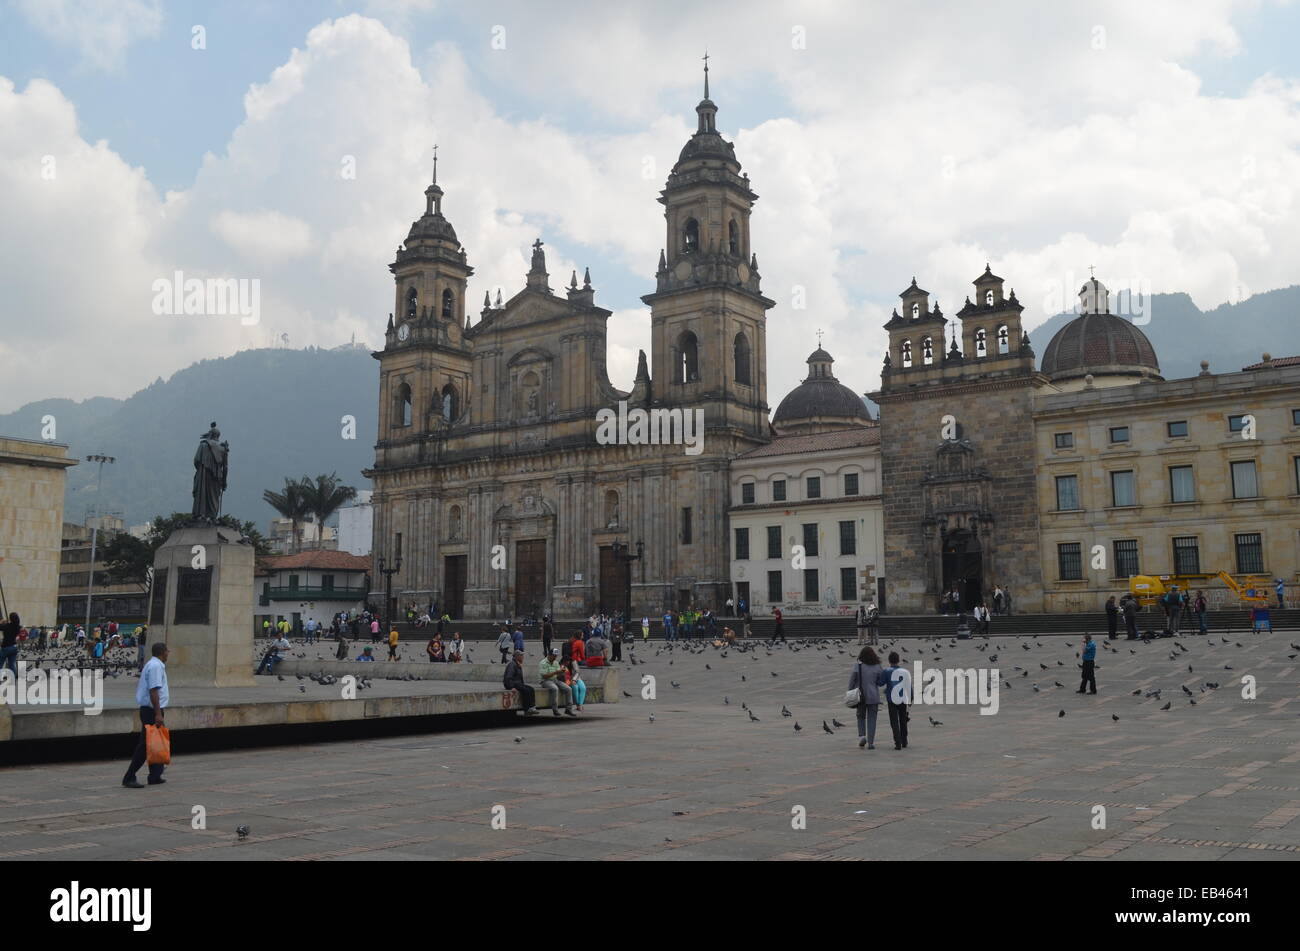 Das Erzbistum Kathedrale von Bogotá, eine römisch-katholische Kathedrale in Plaza Bolivar, Bogota, Kolumbien Stockfoto